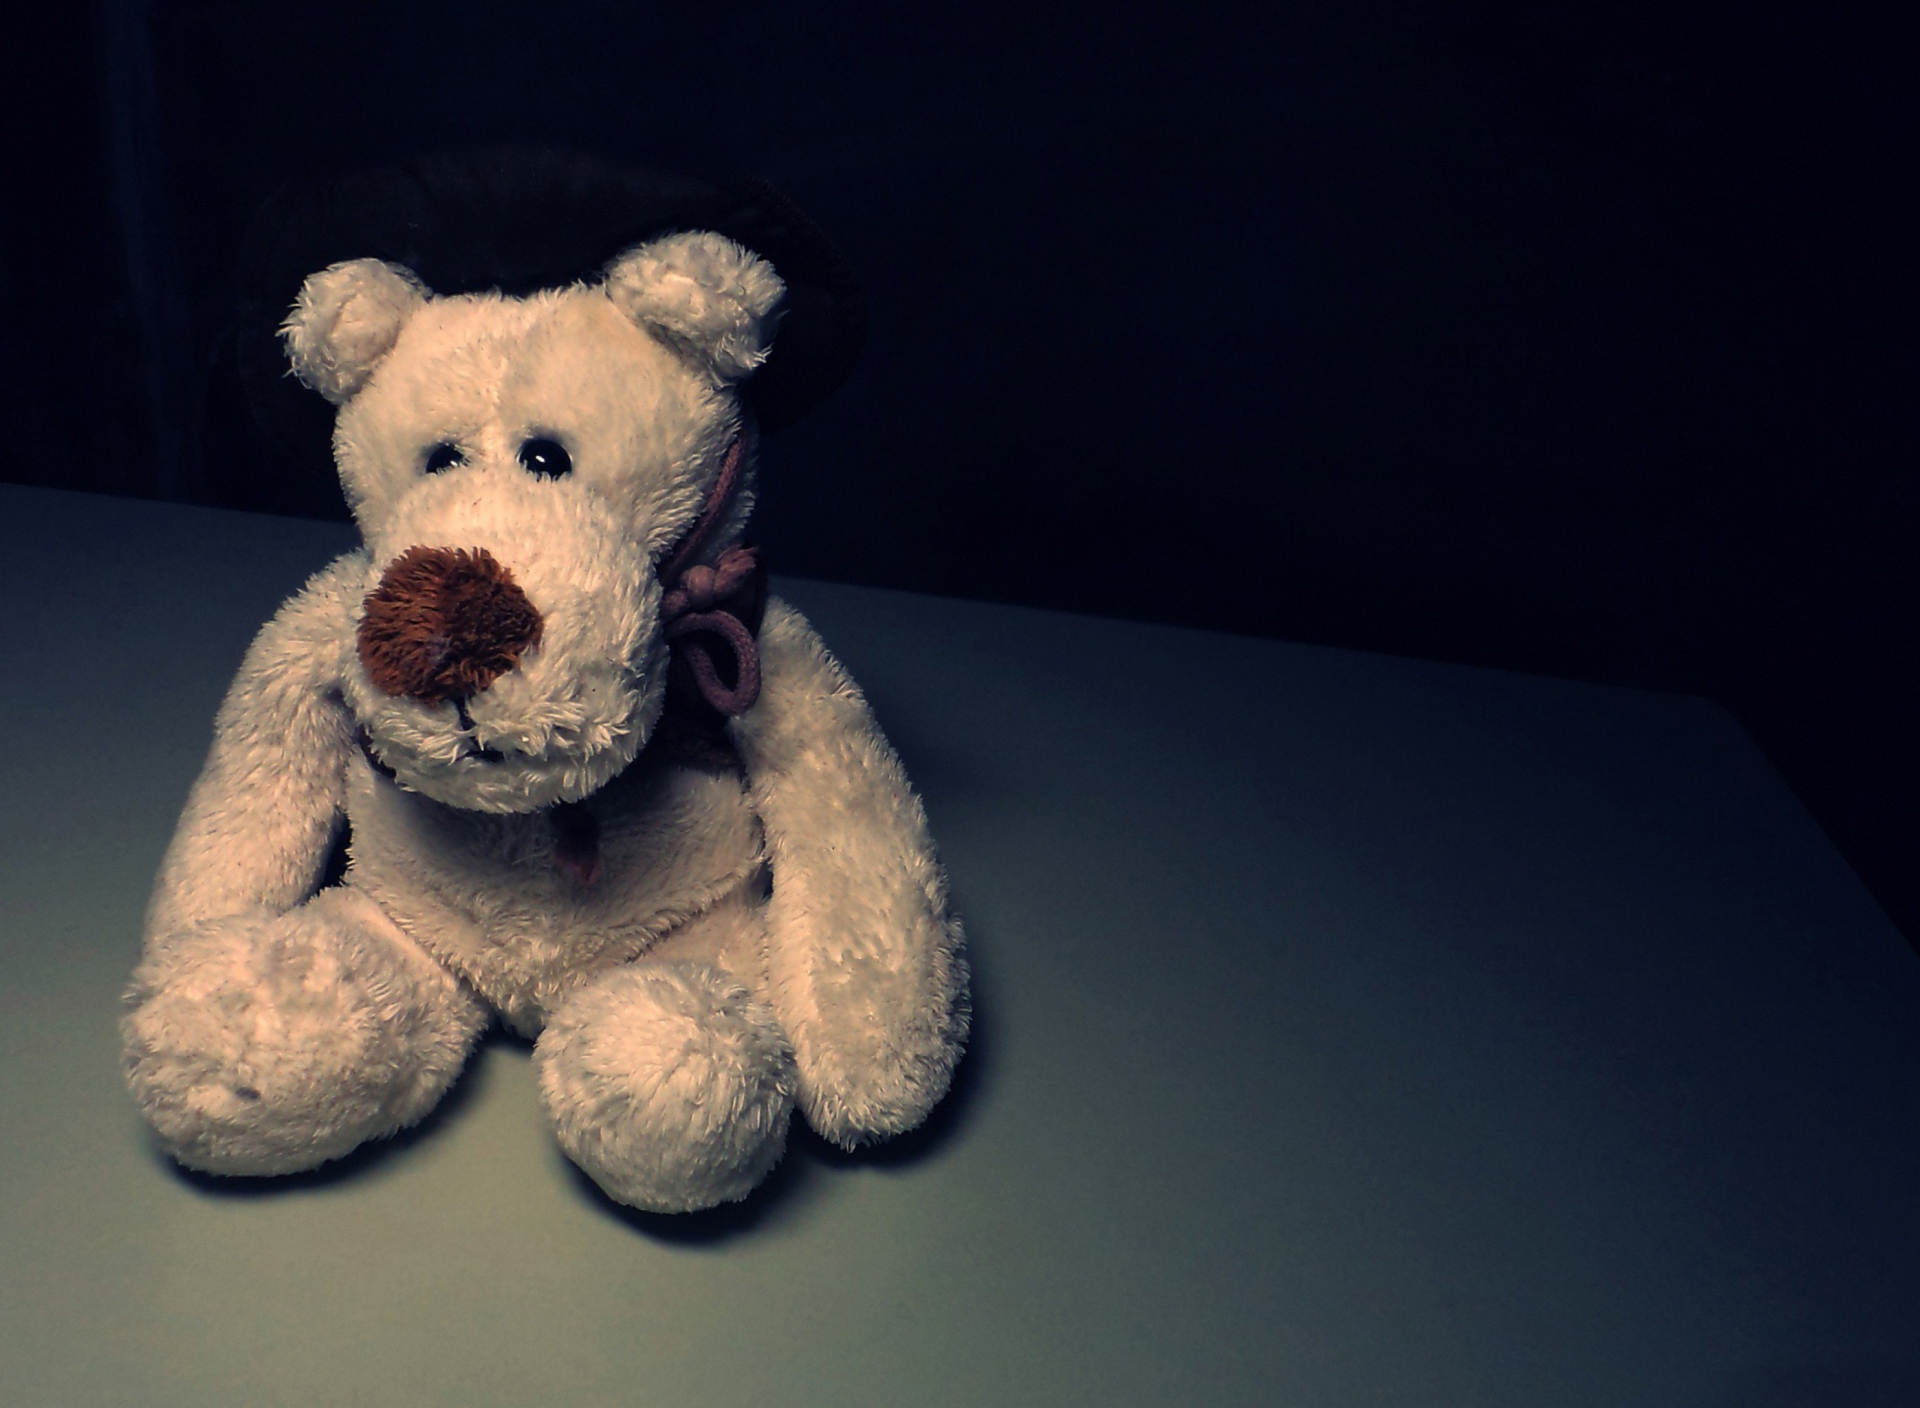 Das Sad Teddy Bear Sitting Alone Wallpaper 1920x1408